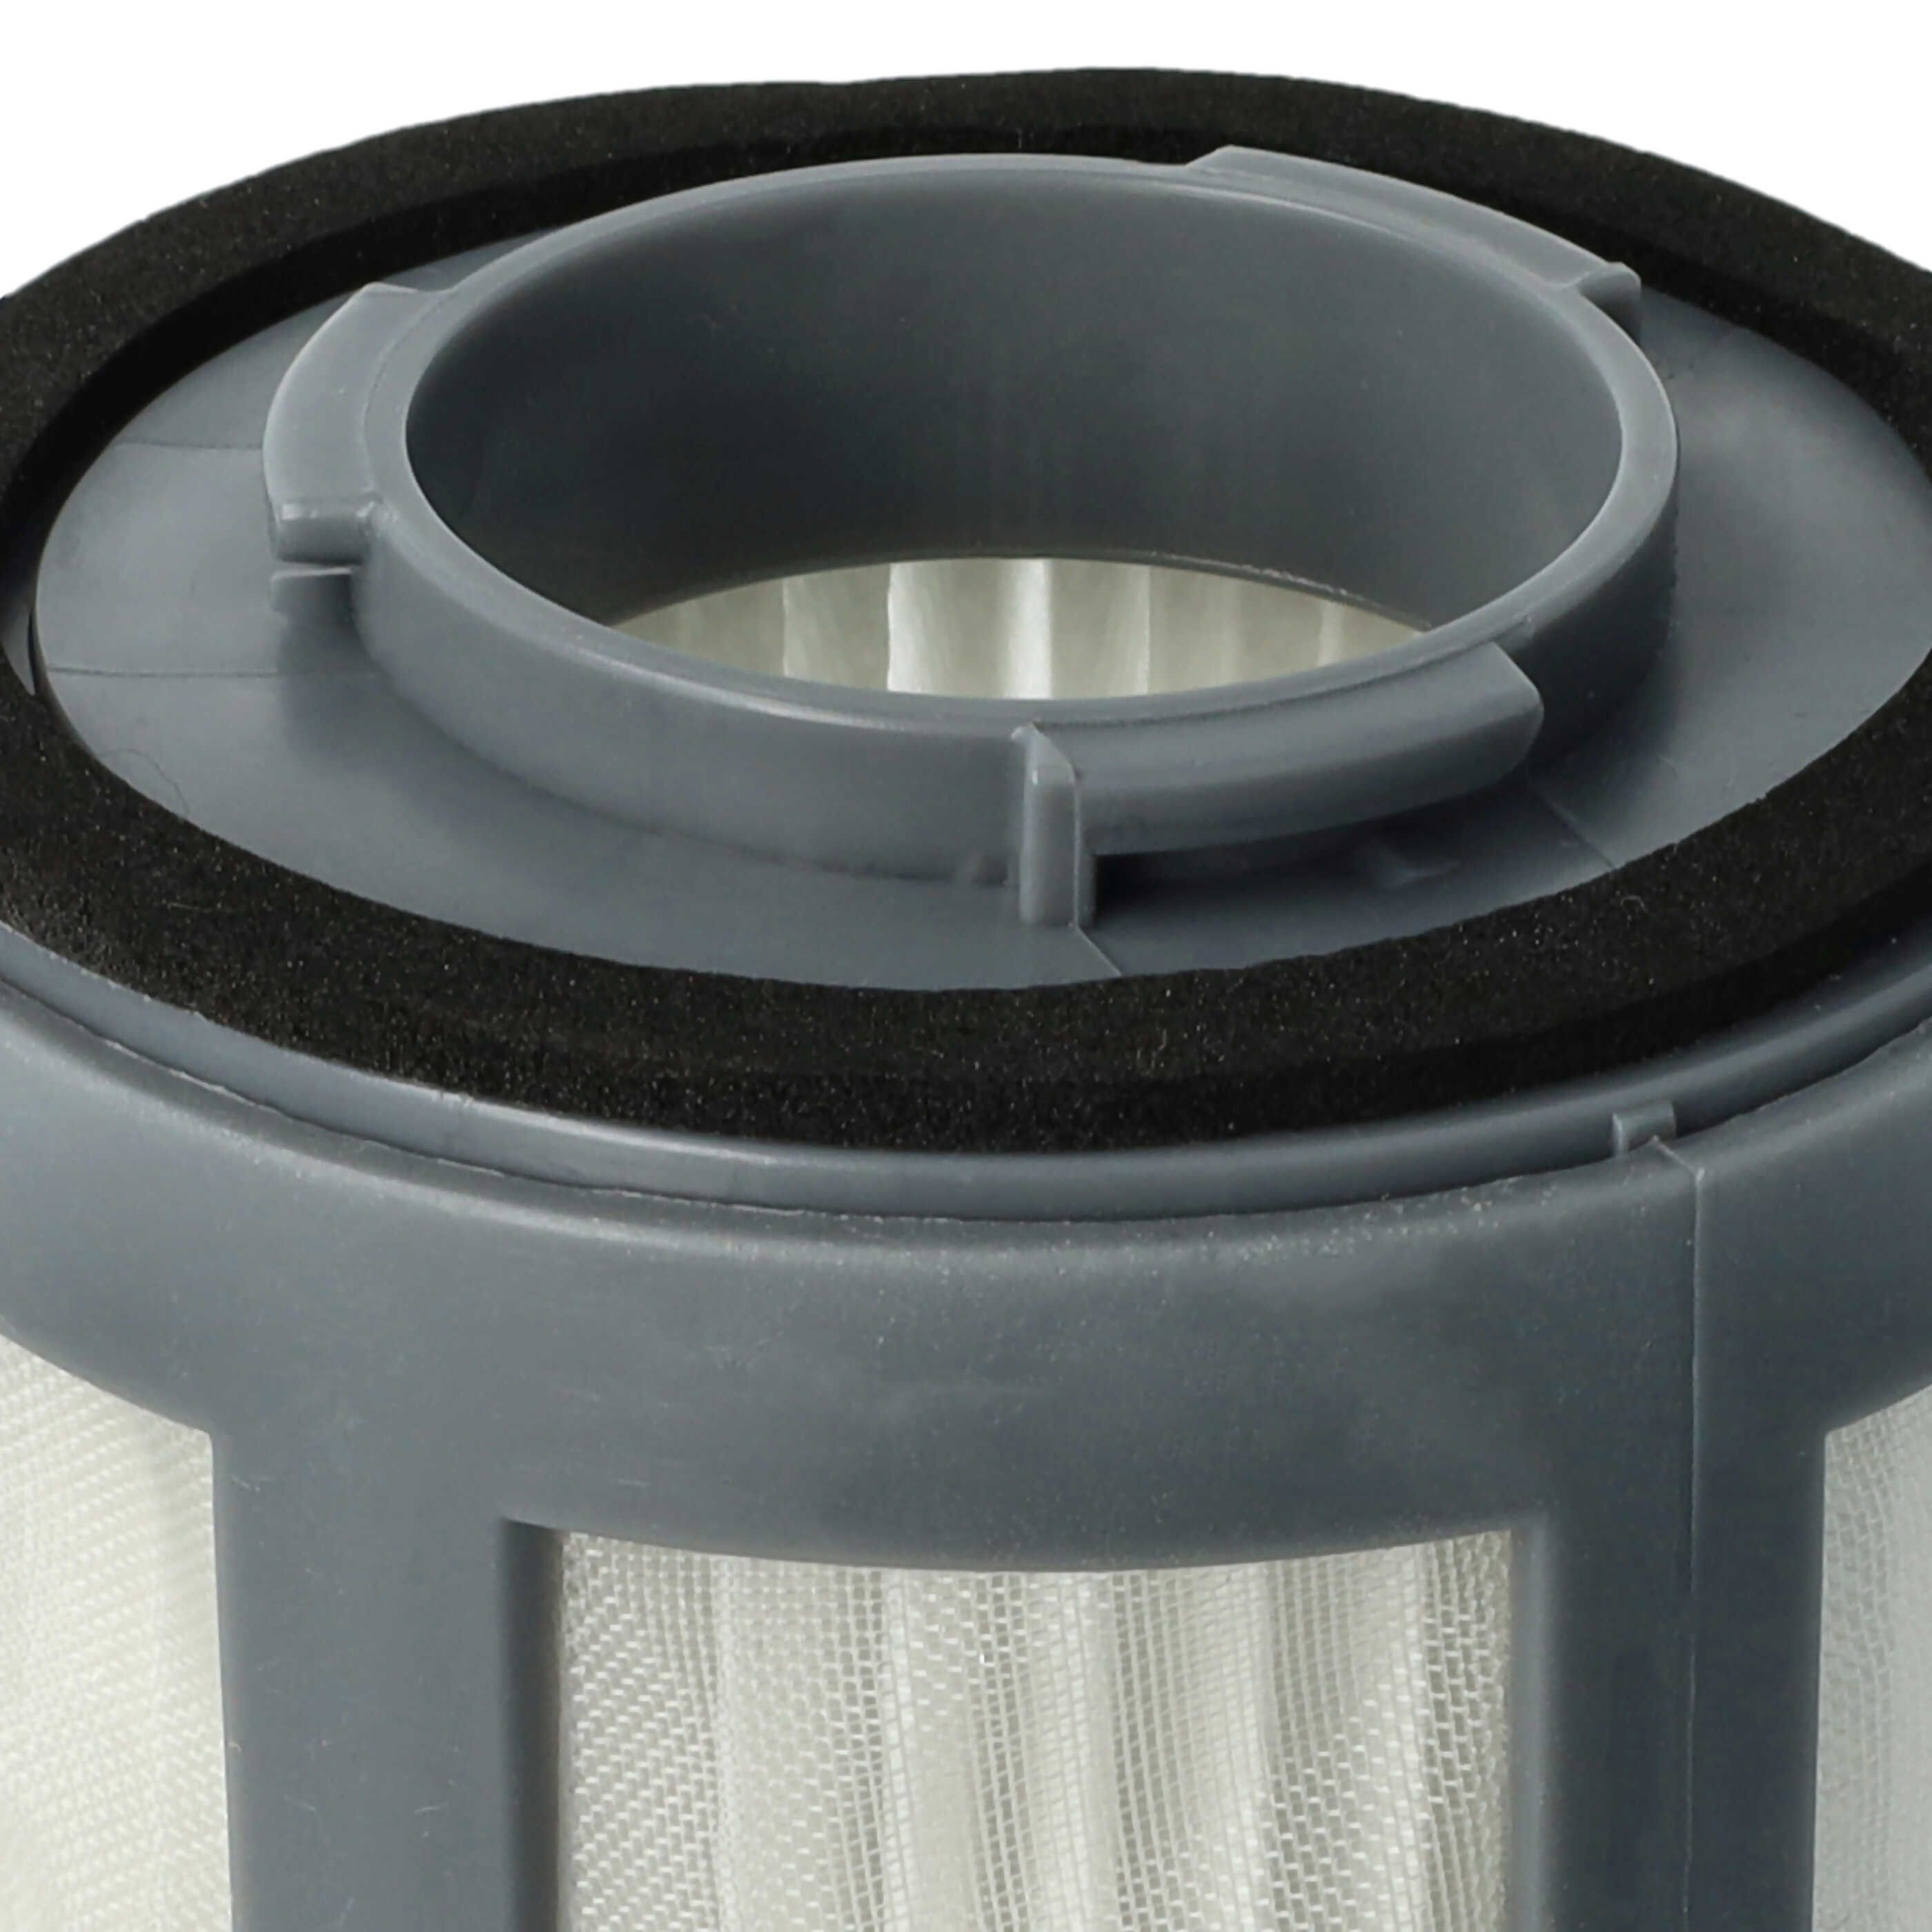 Filtereinsatz (Nylon- + HEPA-Filter) passend für Bomann Staubsauger